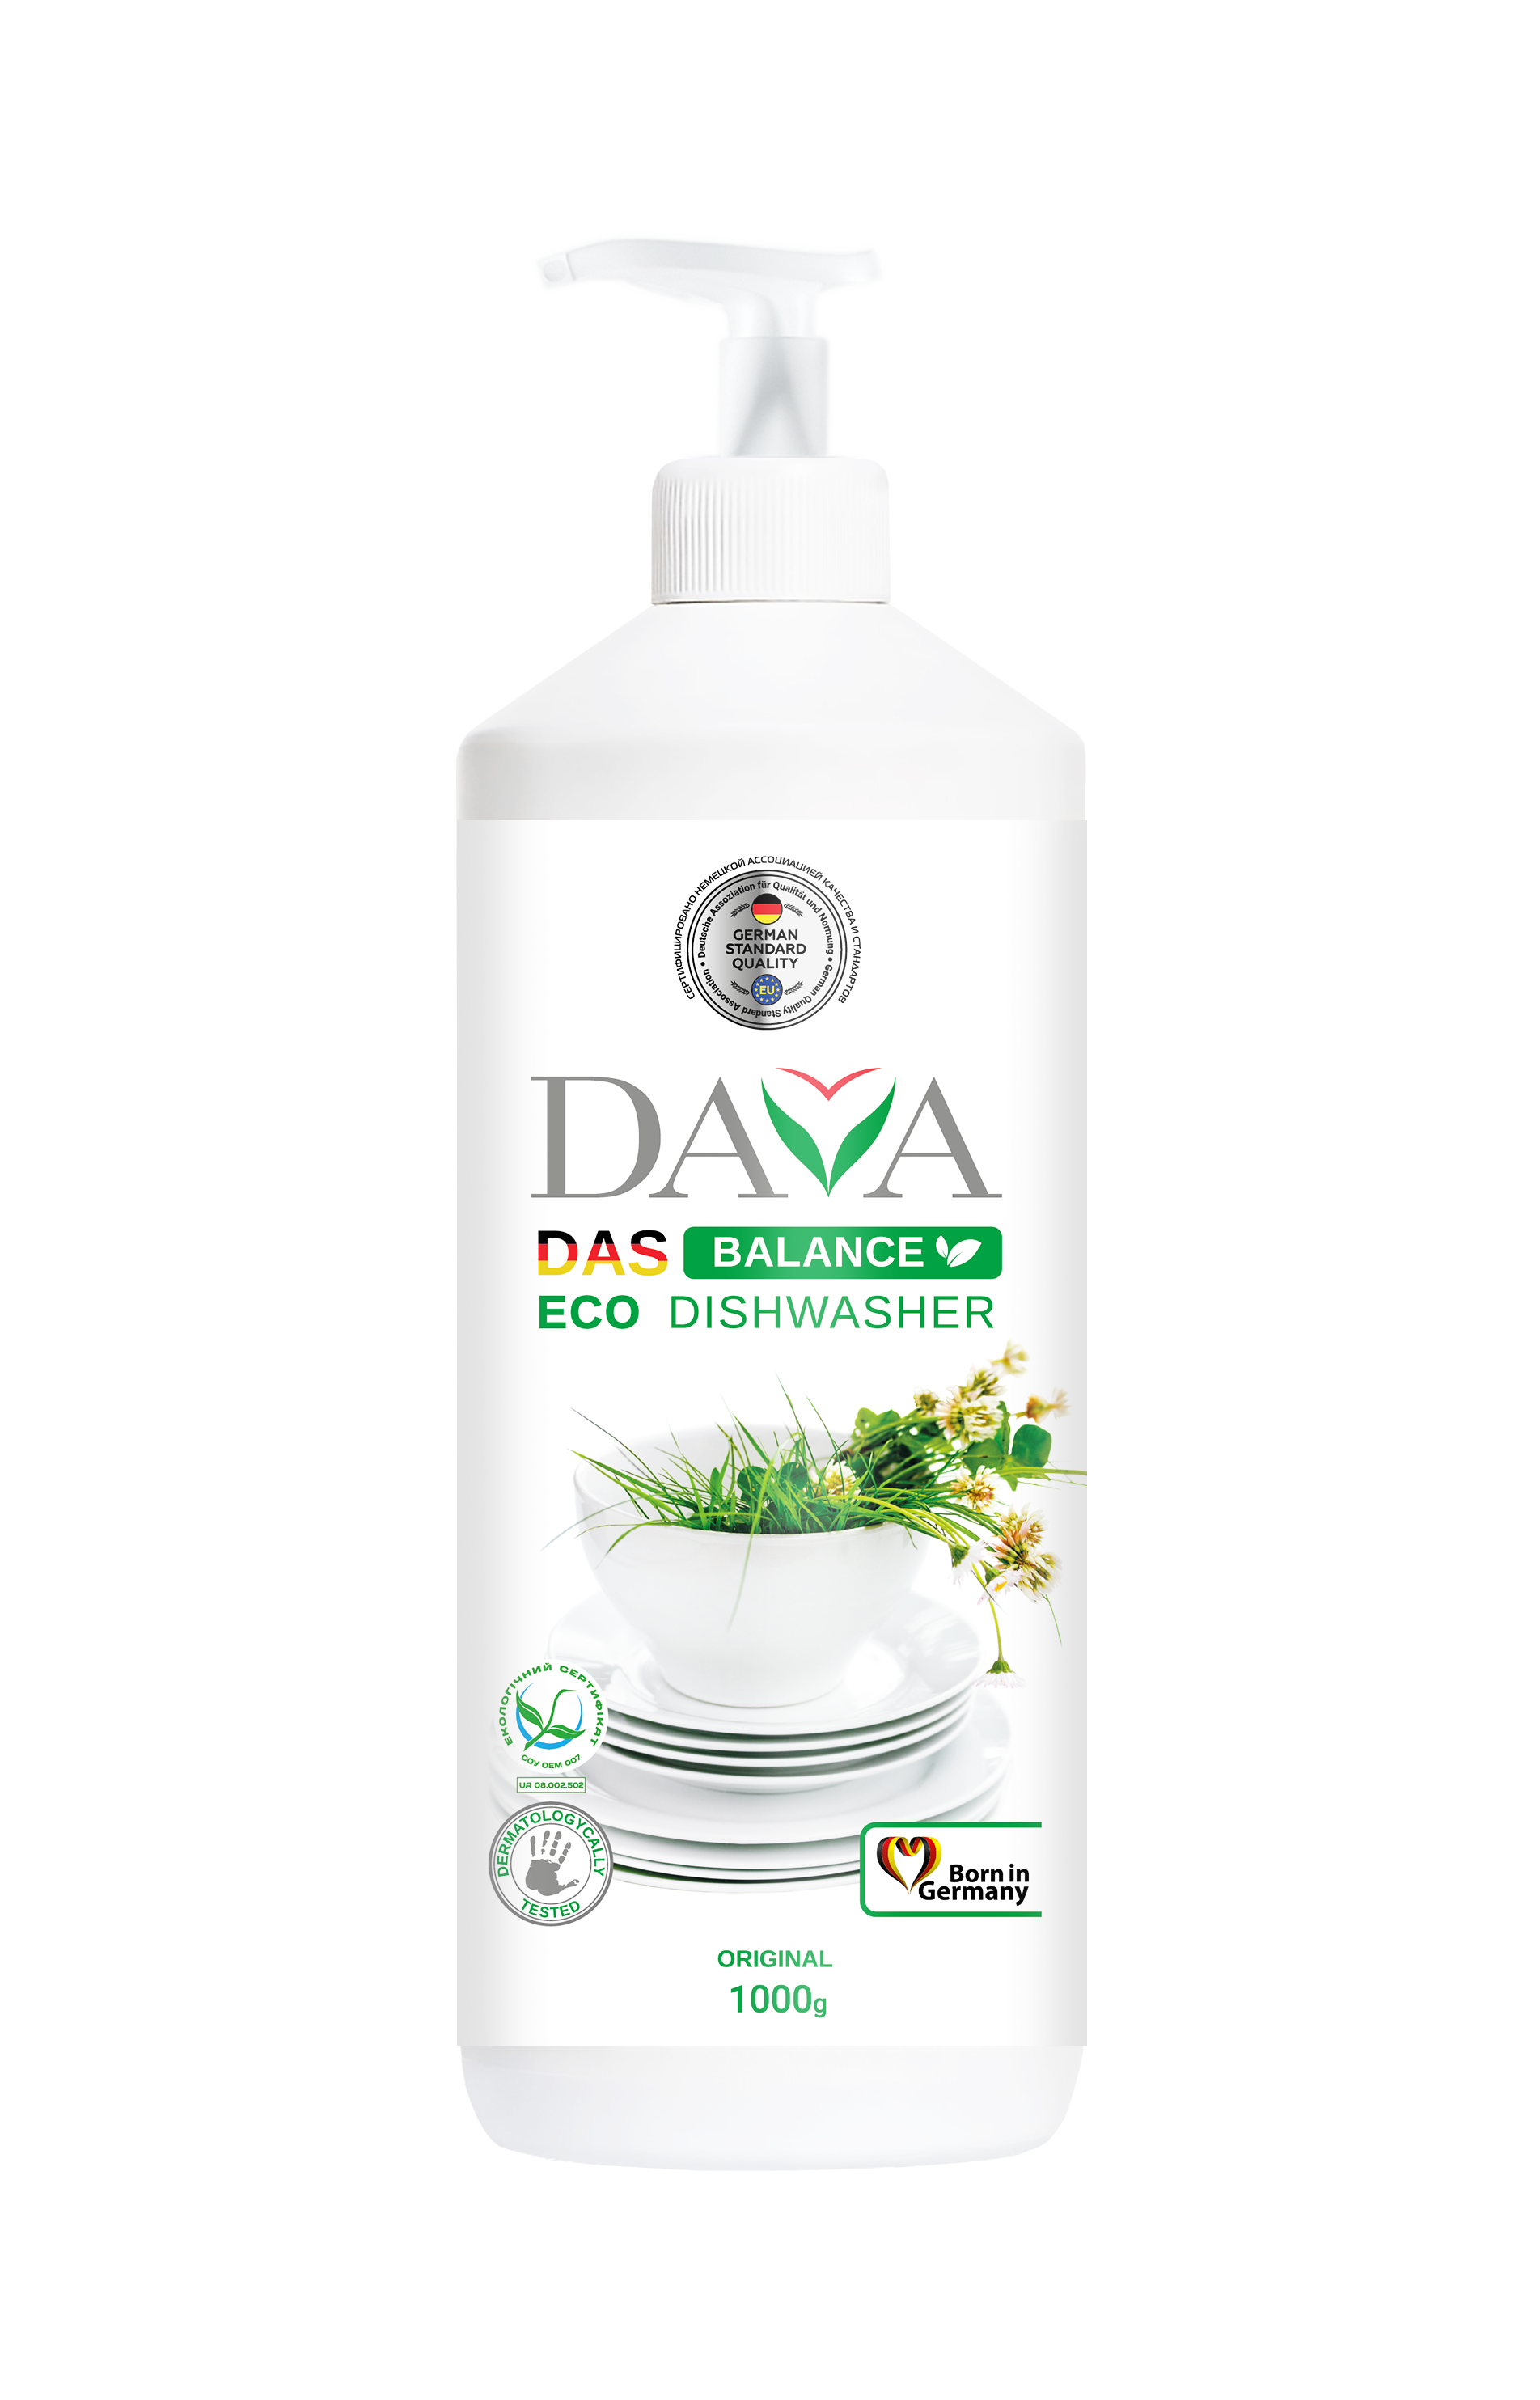 Photos - Dish Soap Екологічний засіб для миття посуду Dava Balance, 1 л (724335)